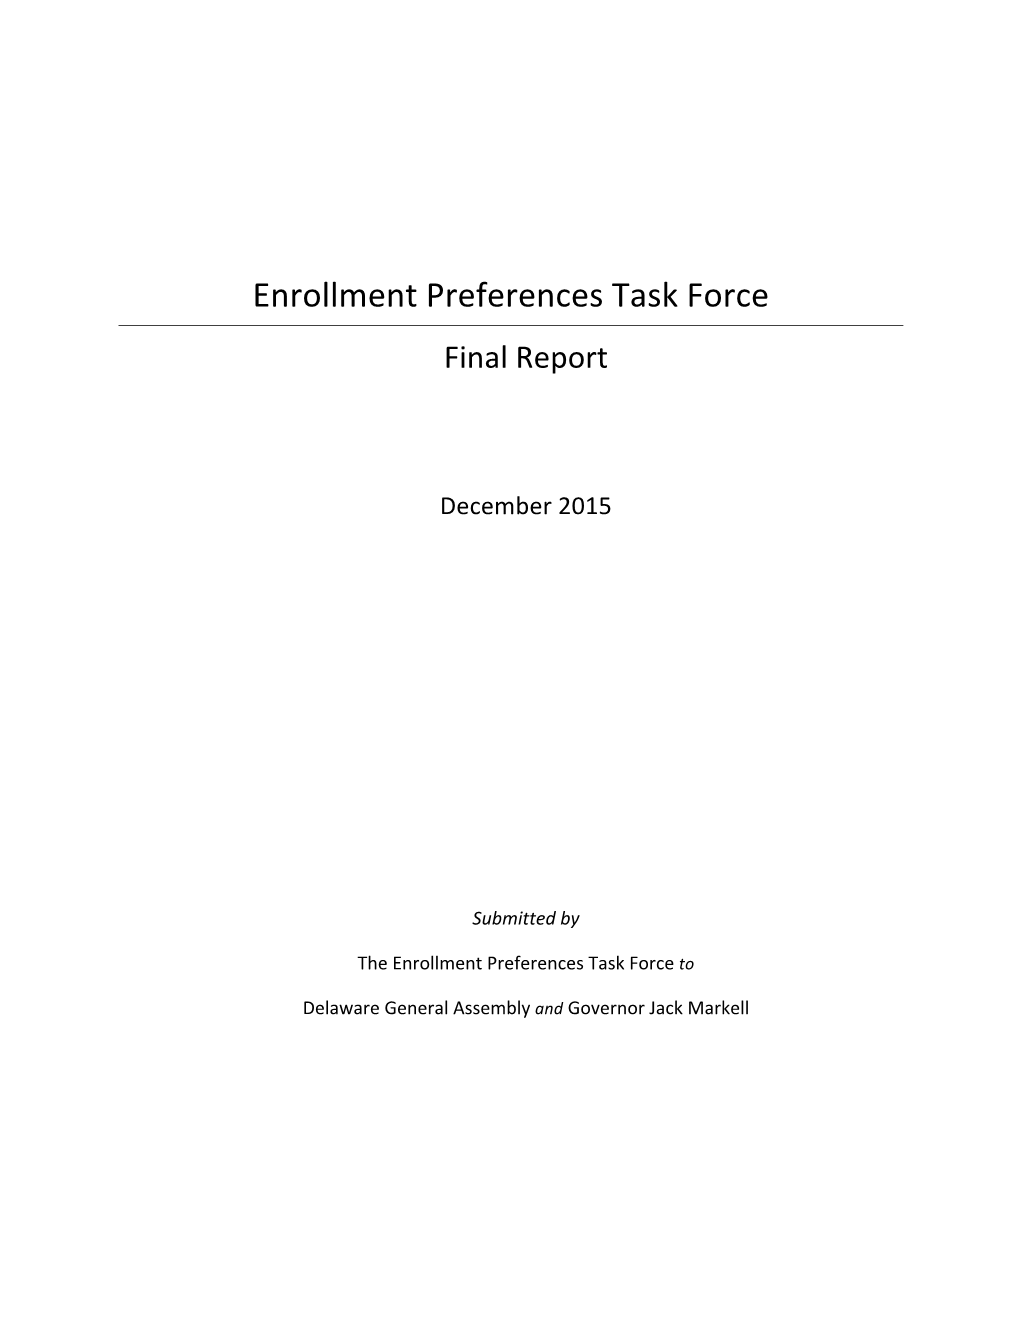 Enrollment Preferences Task Force Final Report